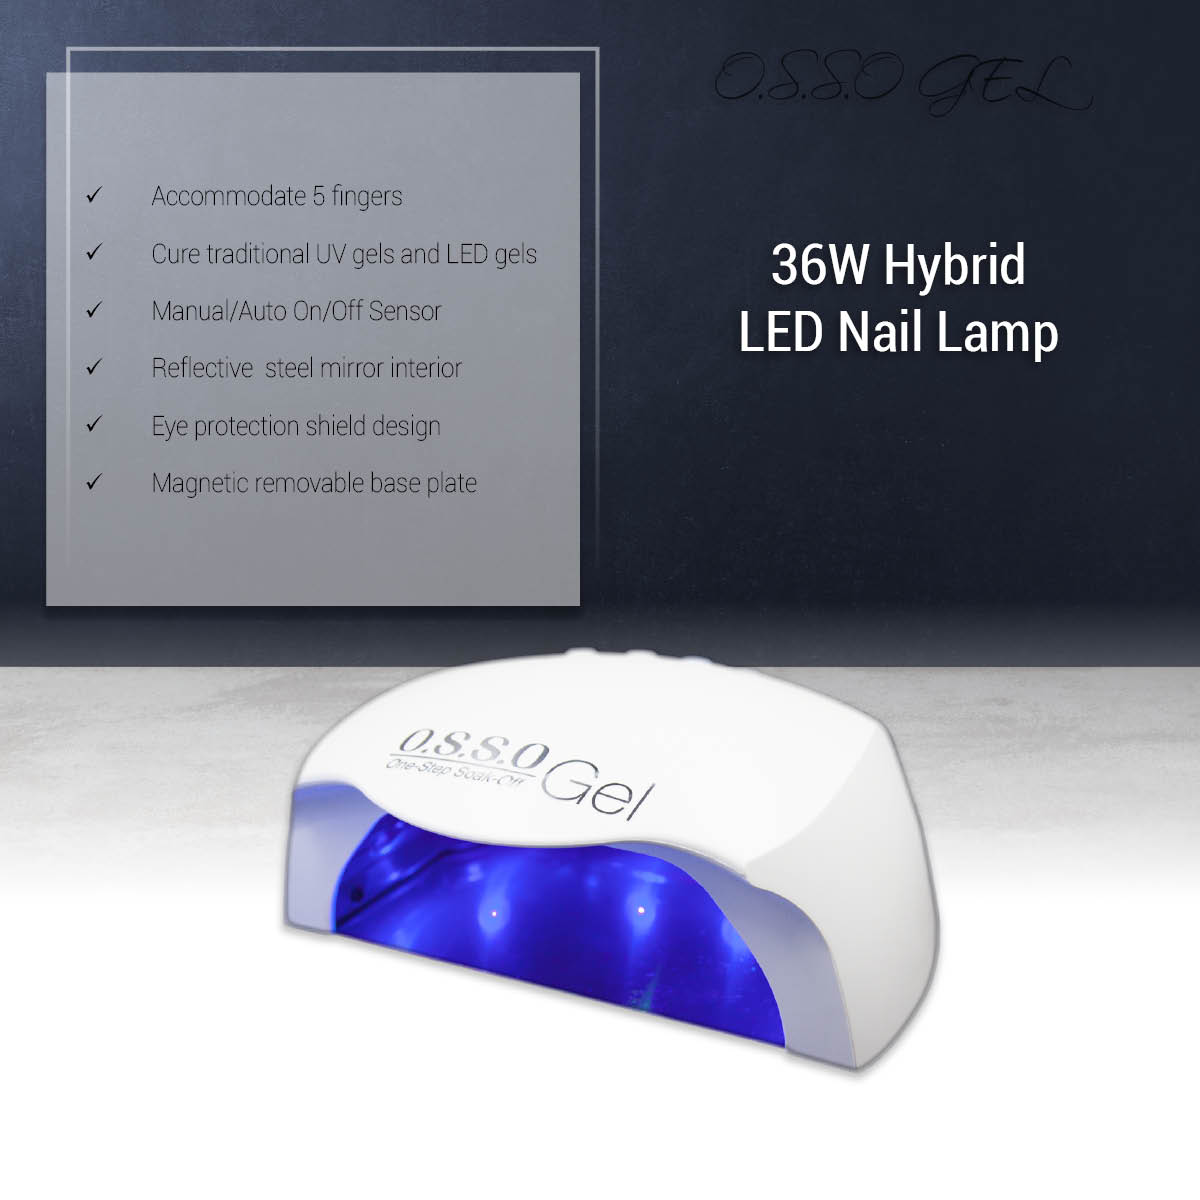 36W Hybrid LED Nail Lamp 